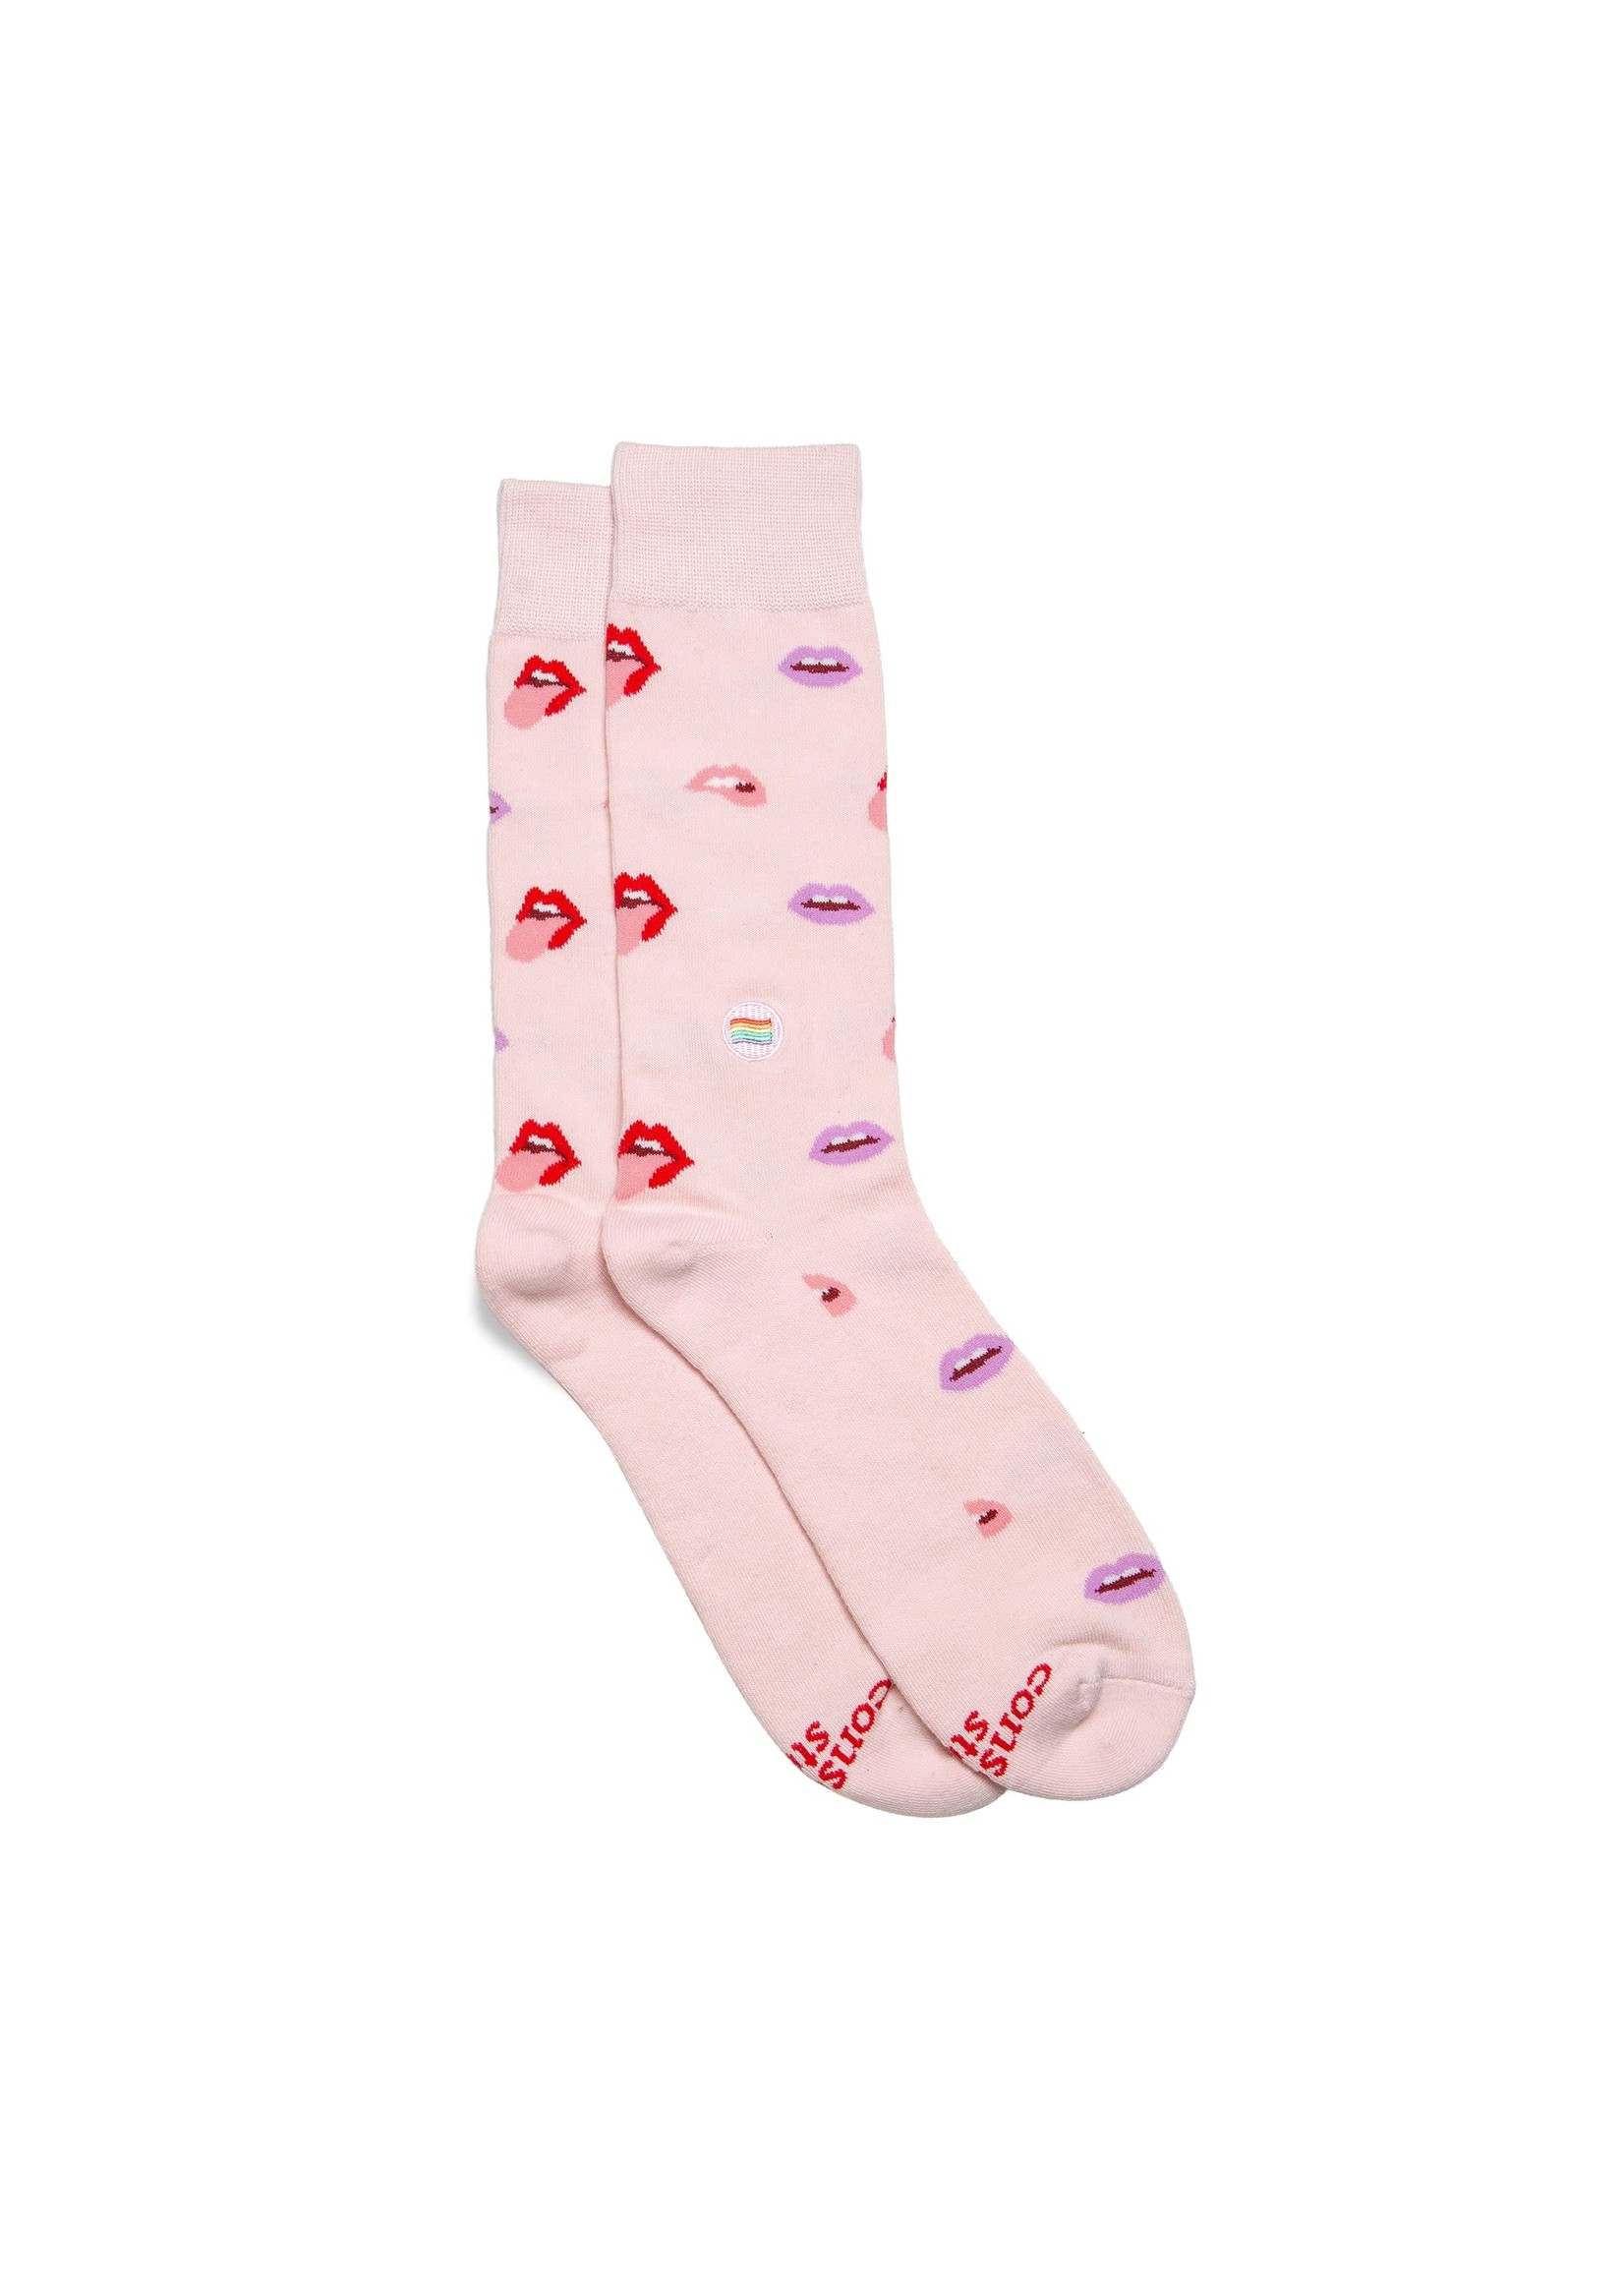 Socks - Save LGBTQ Lives Lips Light Pink